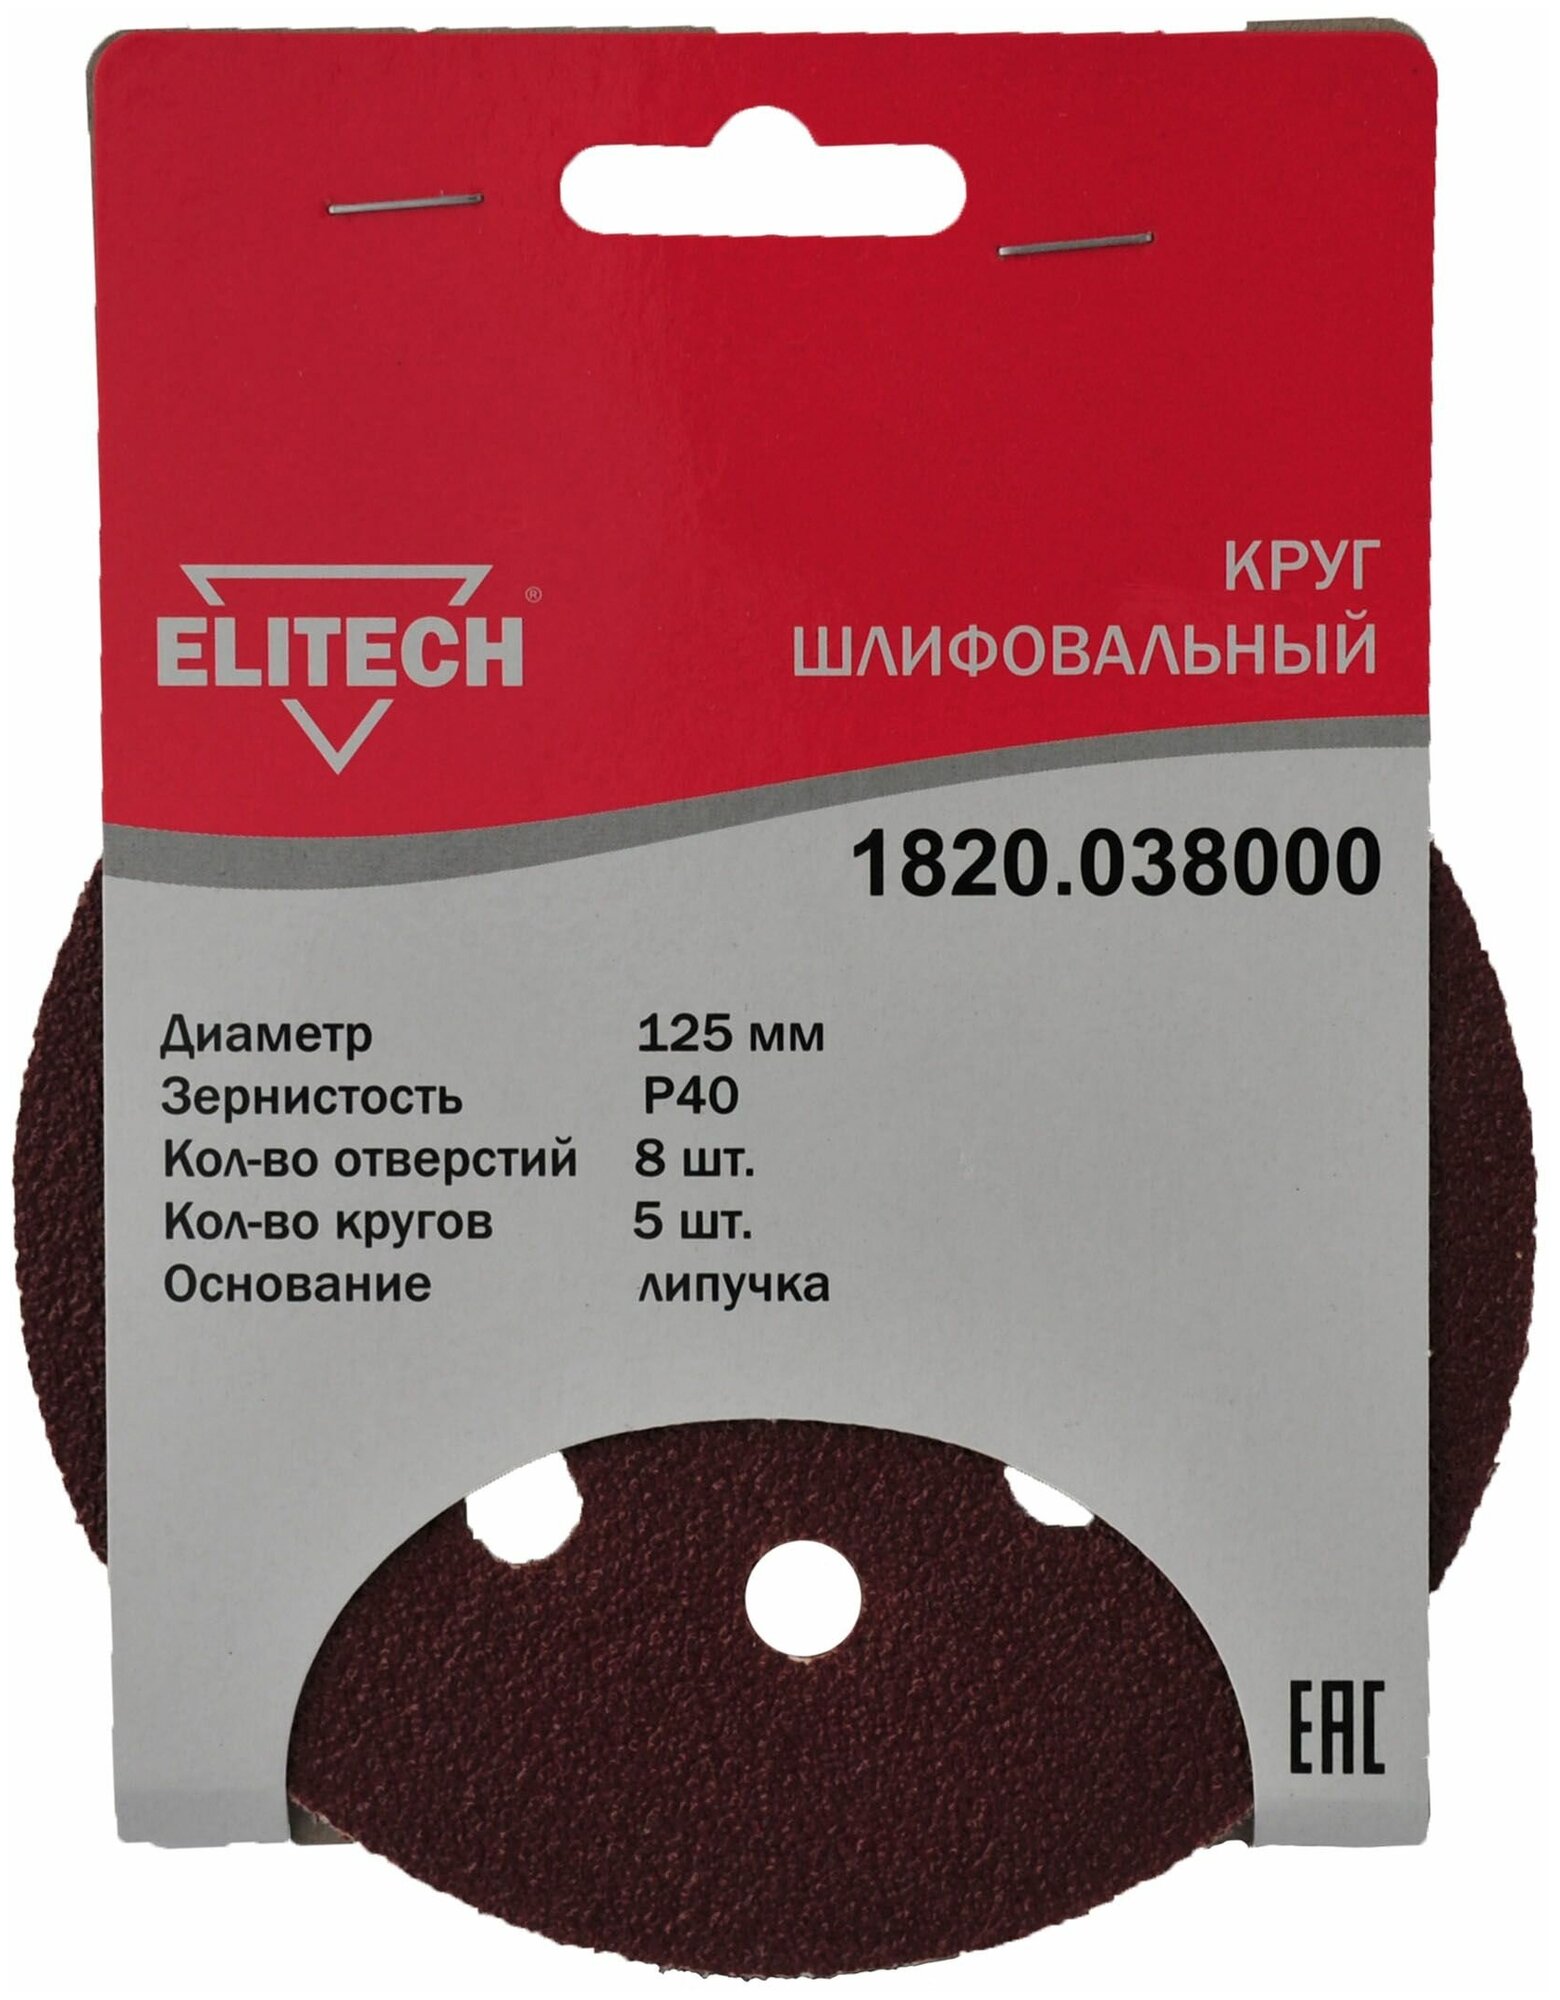 Elitech Шлифкруг 125 мм P40 для ЭШМ 5 шт Elitech 1820.038000